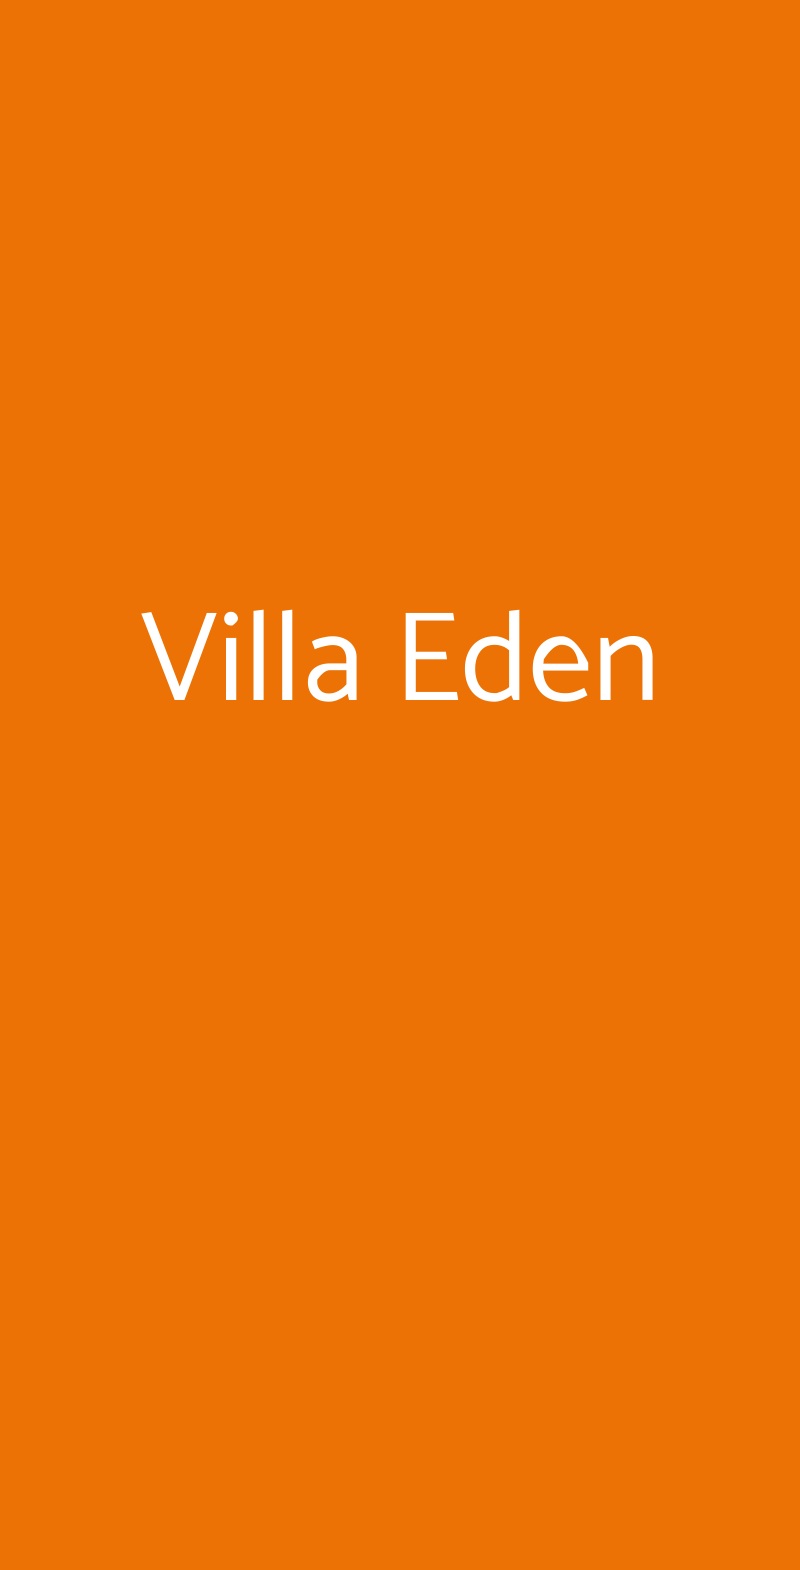 Villa Eden Bagnolo San Vito menù 1 pagina